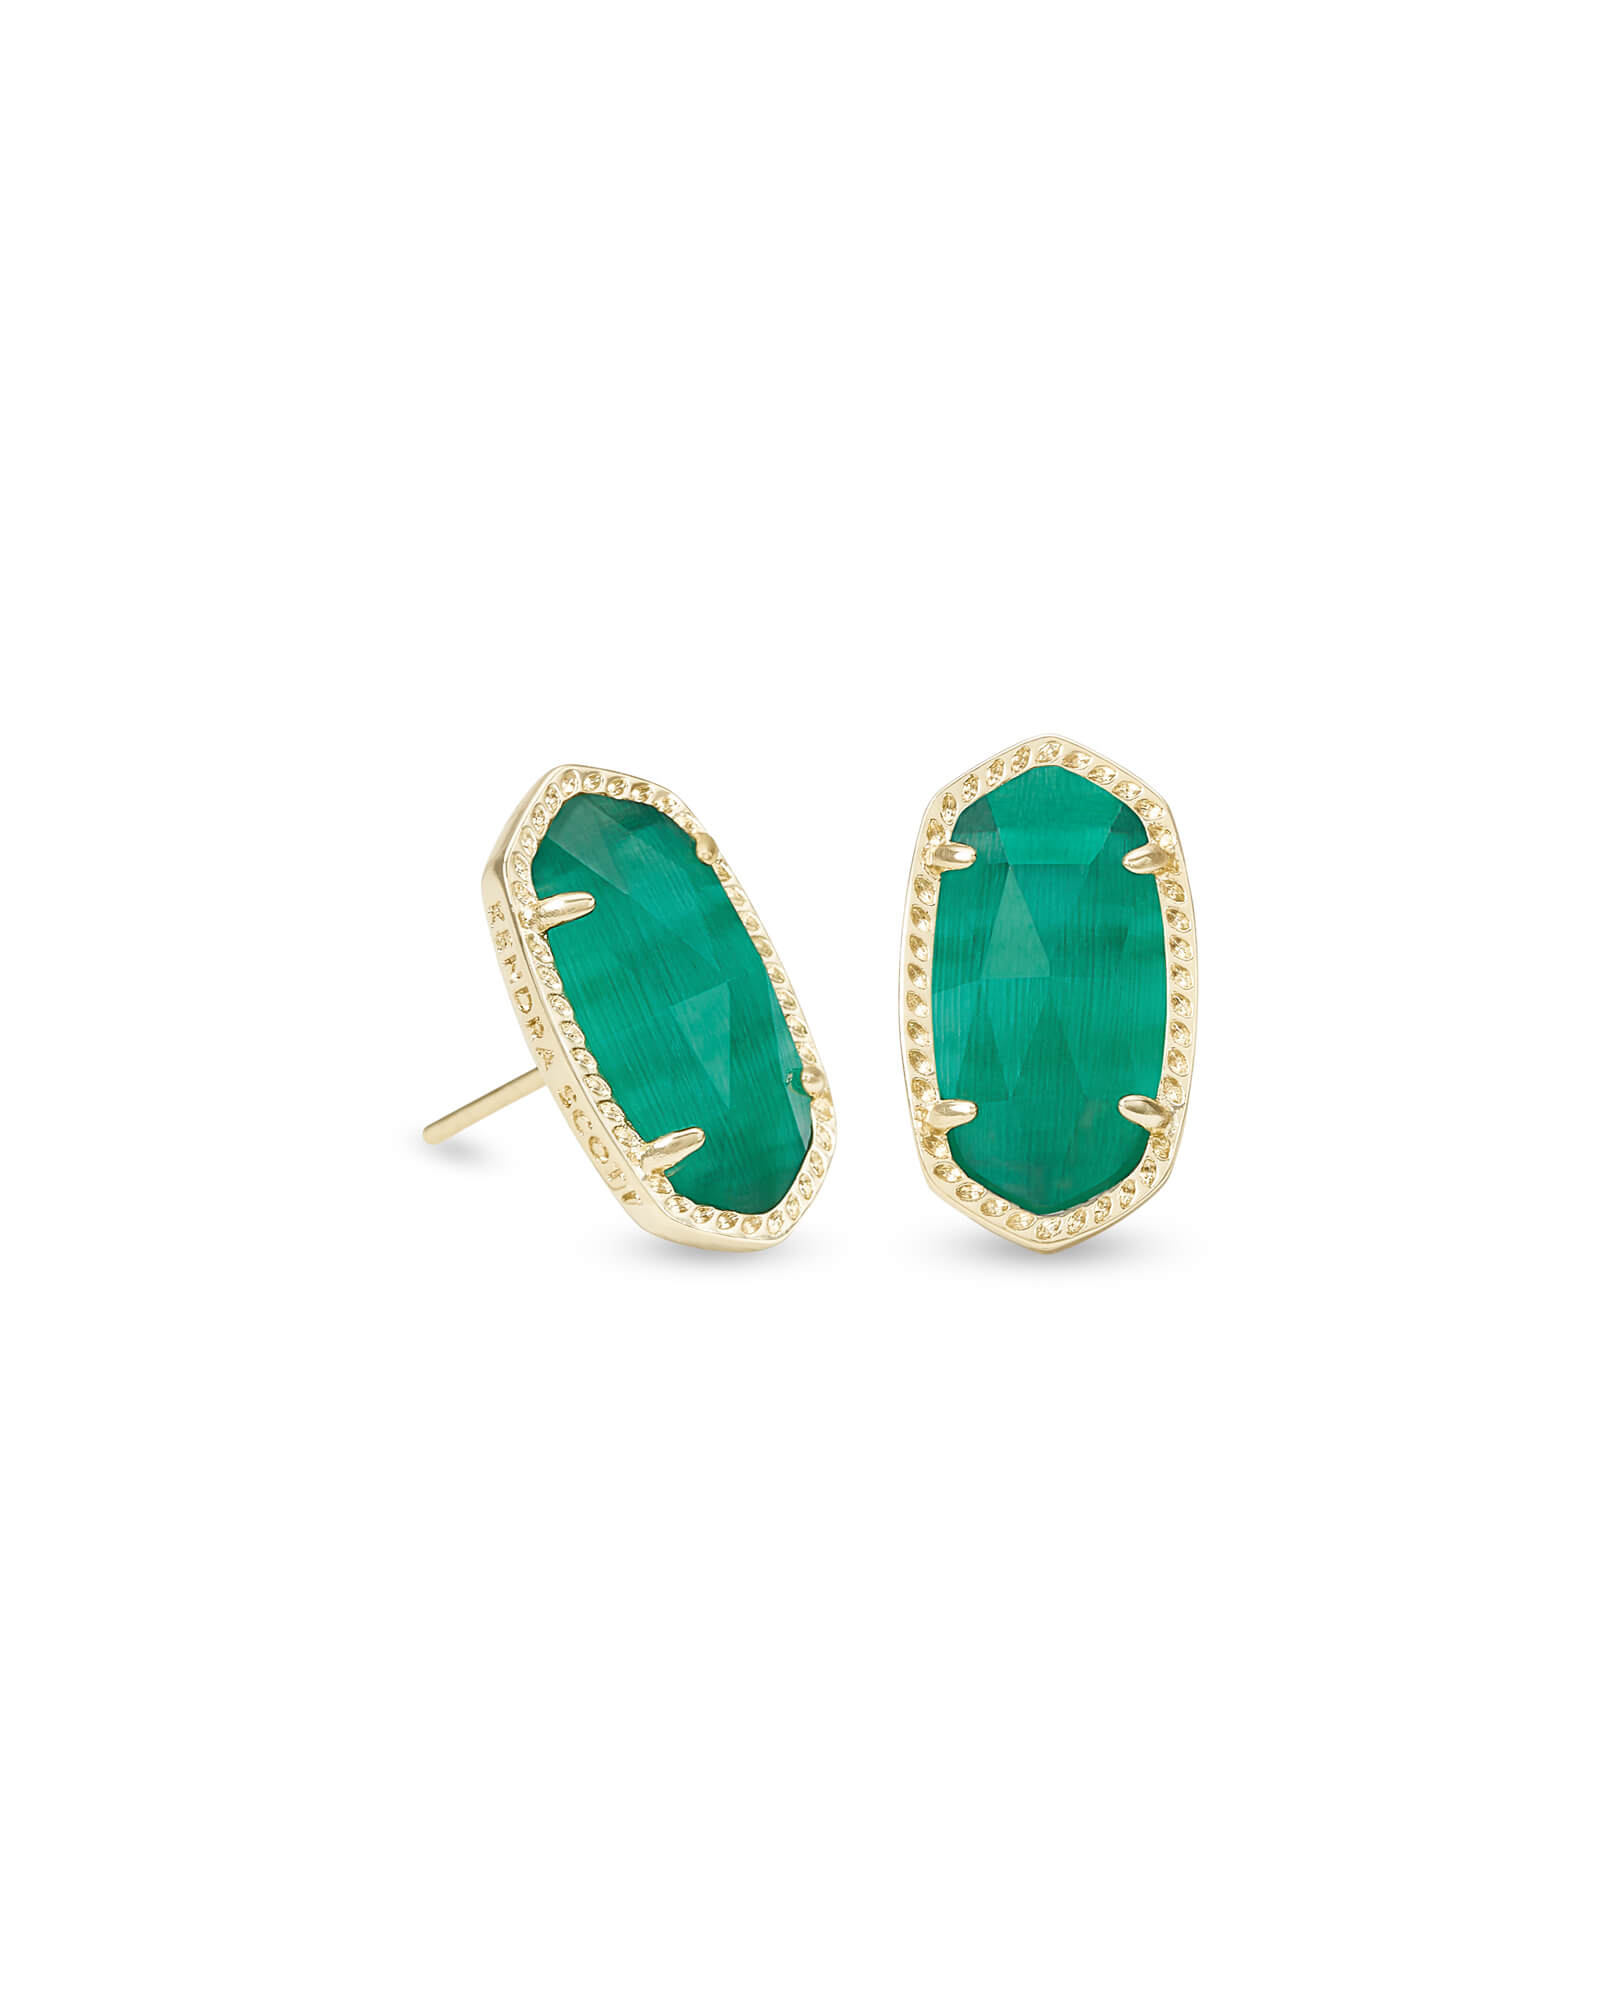 Ellie Gold Stud Earrings in Emerald Cat's Eye | Kendra Scott